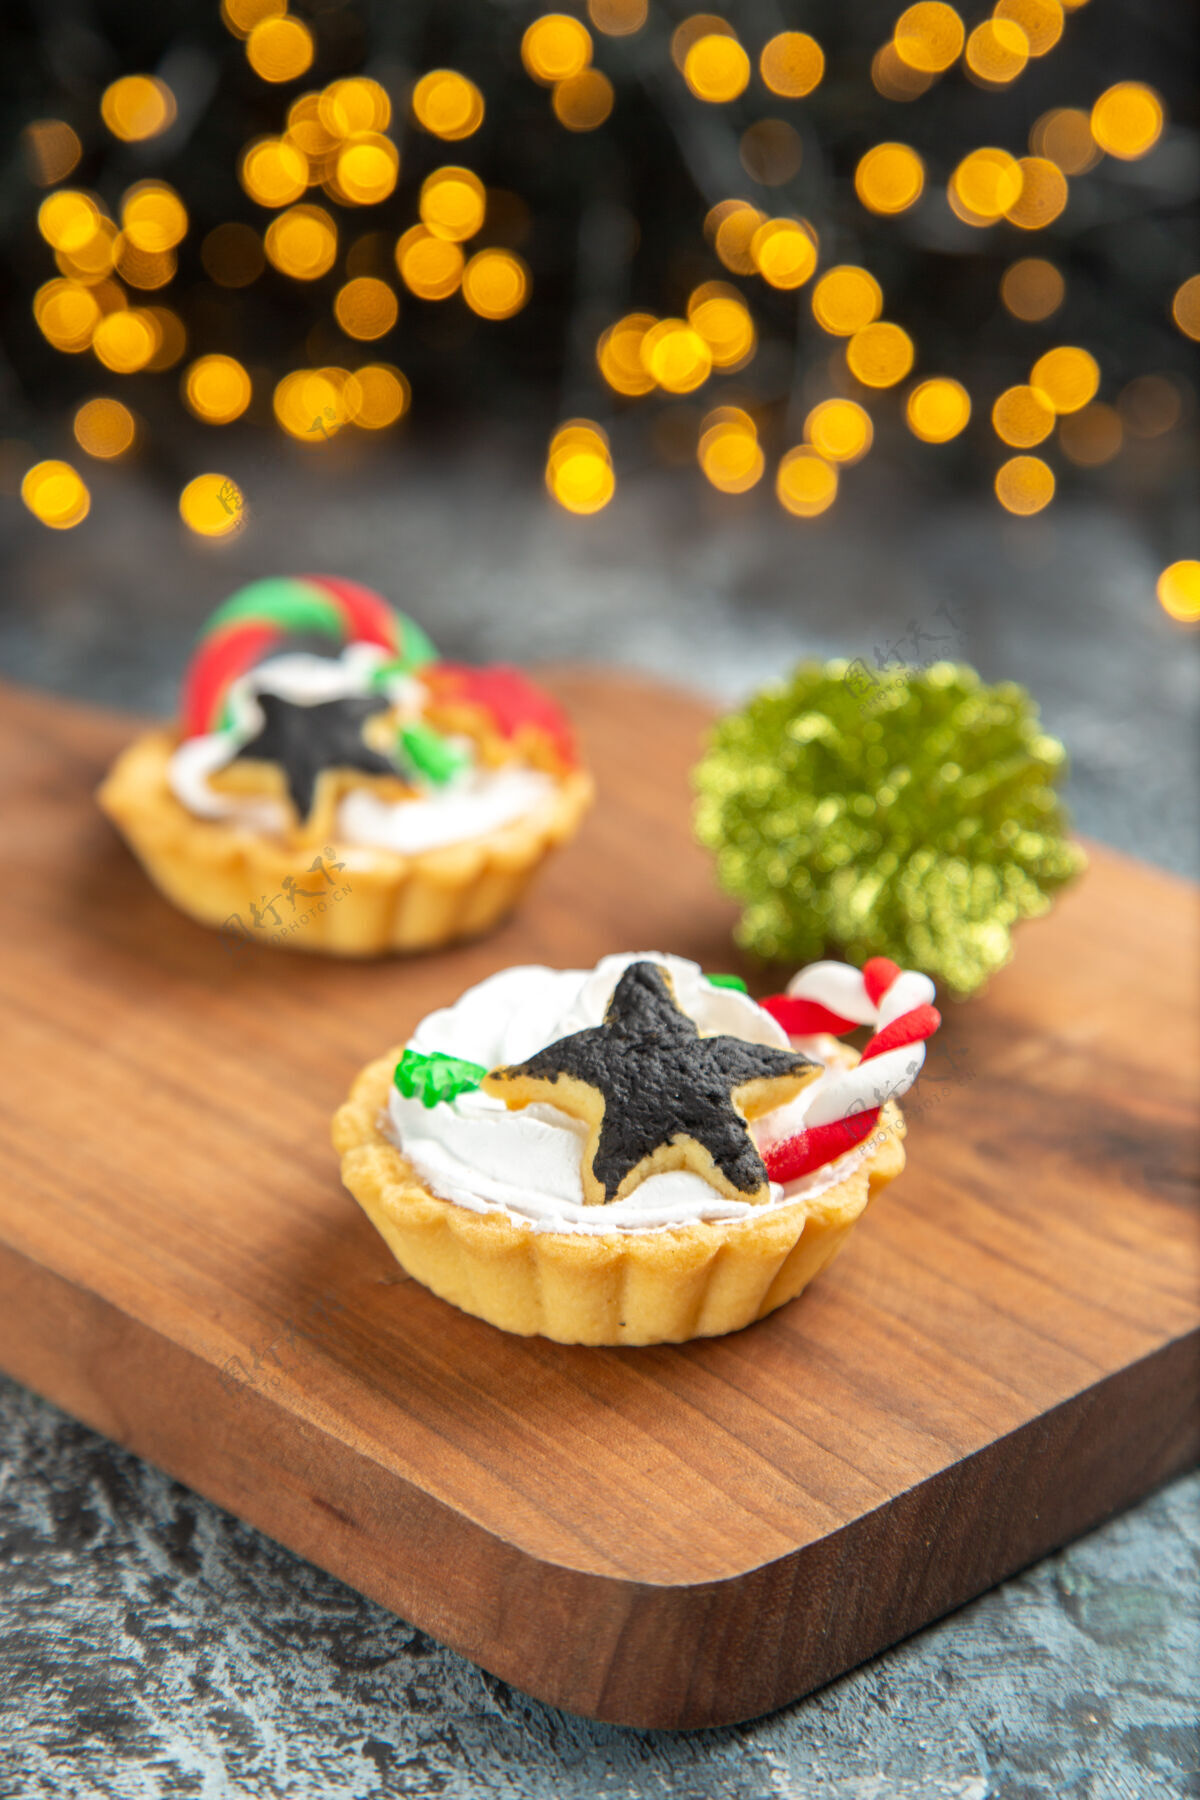 板前视图小馅饼在服务板上圣诞饰品在黑暗孤立的表面甜点餐厅菜肴